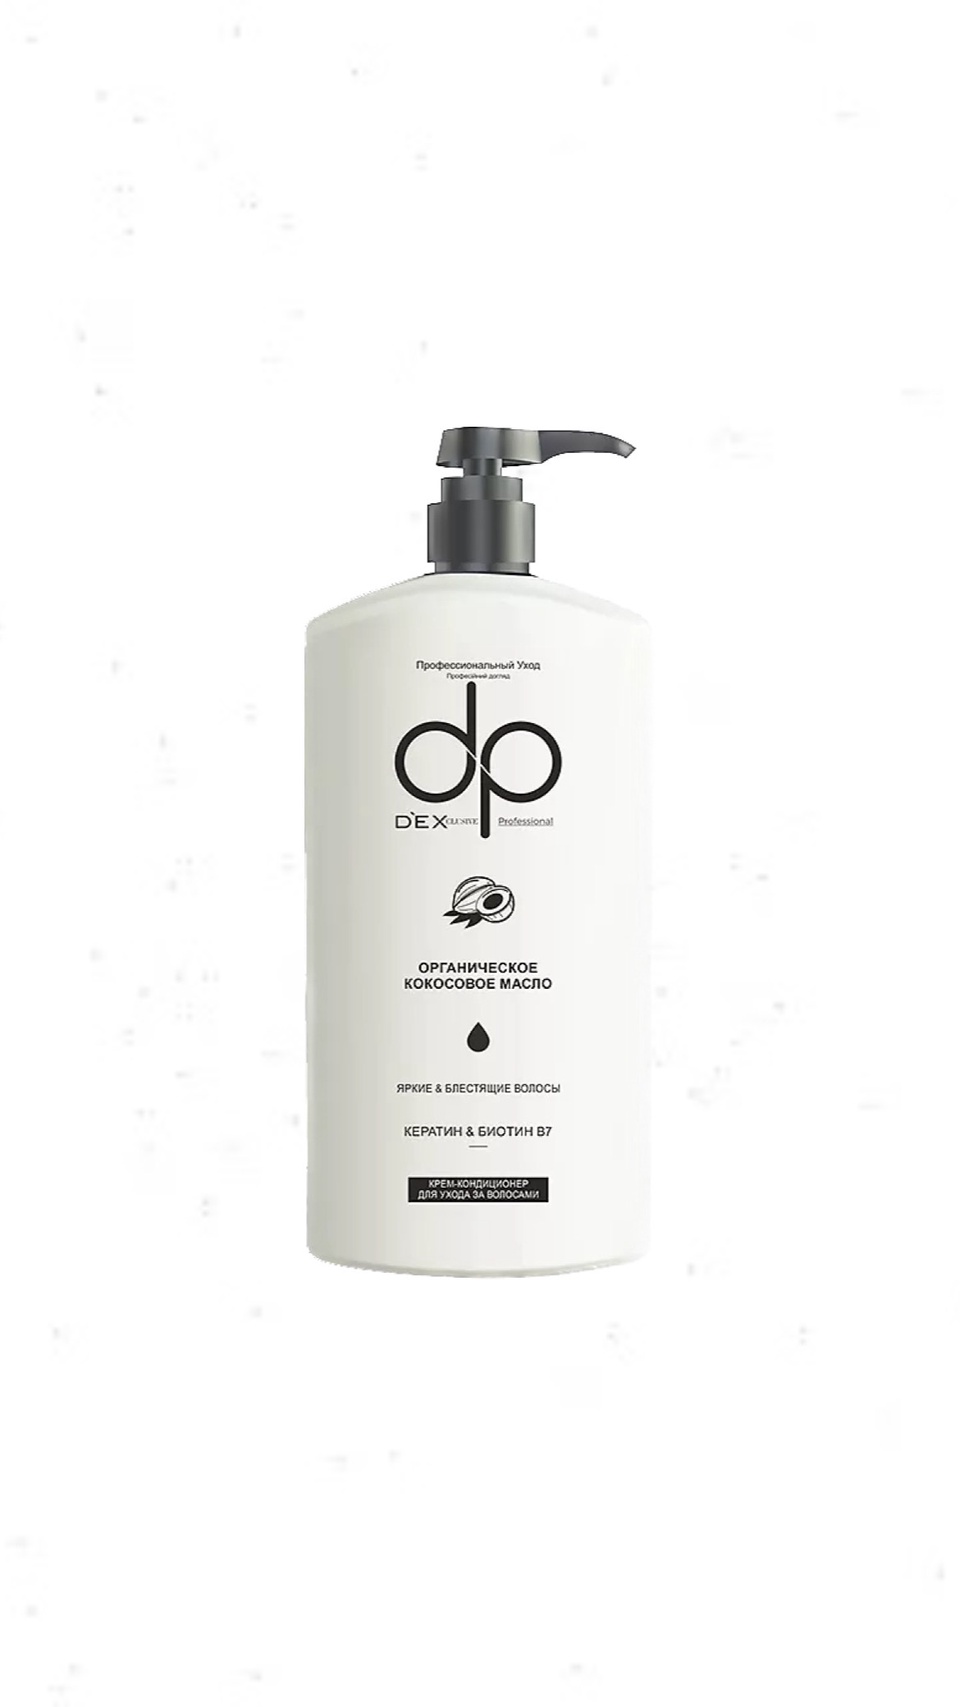 Бальзам кондиционер для волос с дозатором DP DEXCLUSIVE с органическим кокосовым маслом 500 мл - 350 ₽, заказать онлайн.